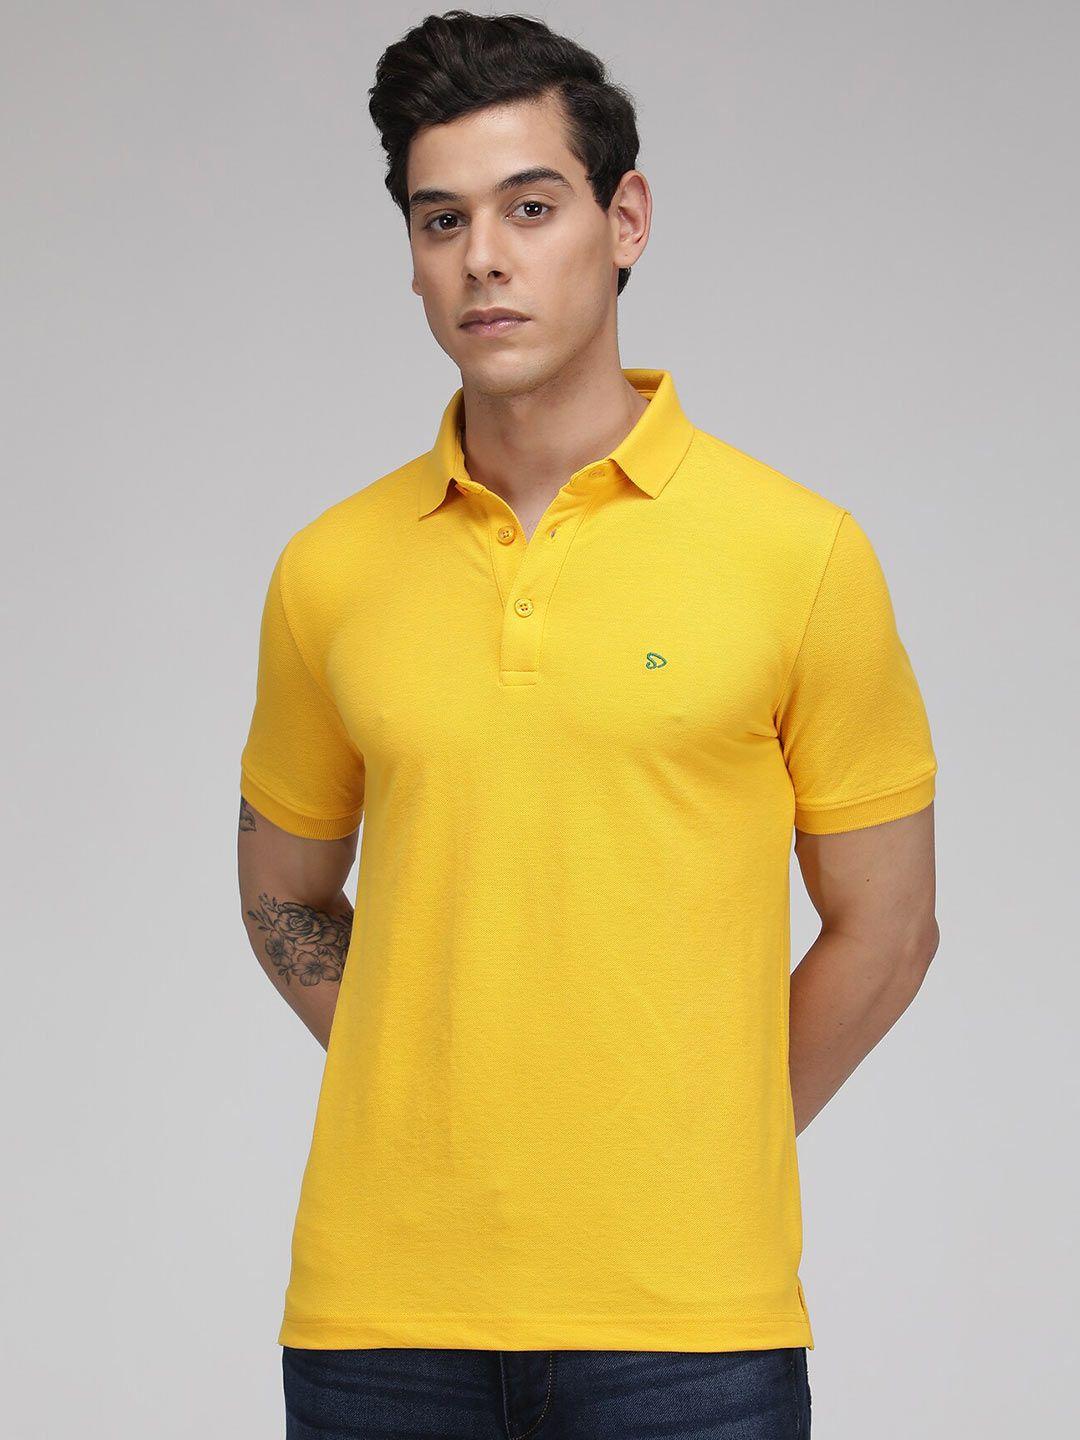 sporto men yellow polo collar t-shirt